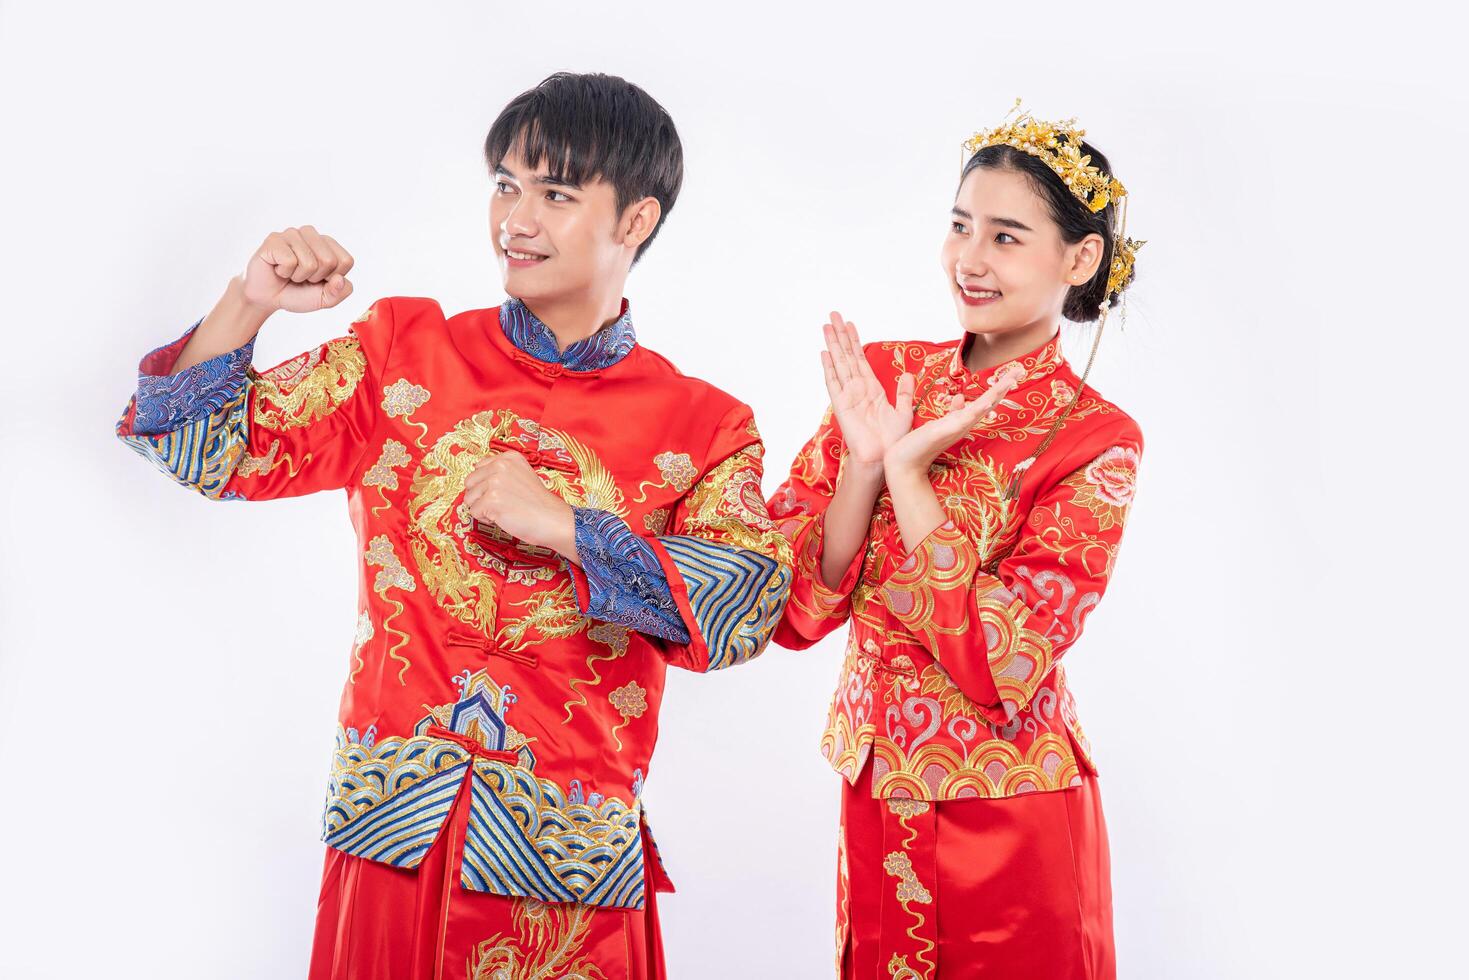 hombre y mujer visten traje cheongsam contentos de que el evento se lleve a cabo el año nuevo chino foto